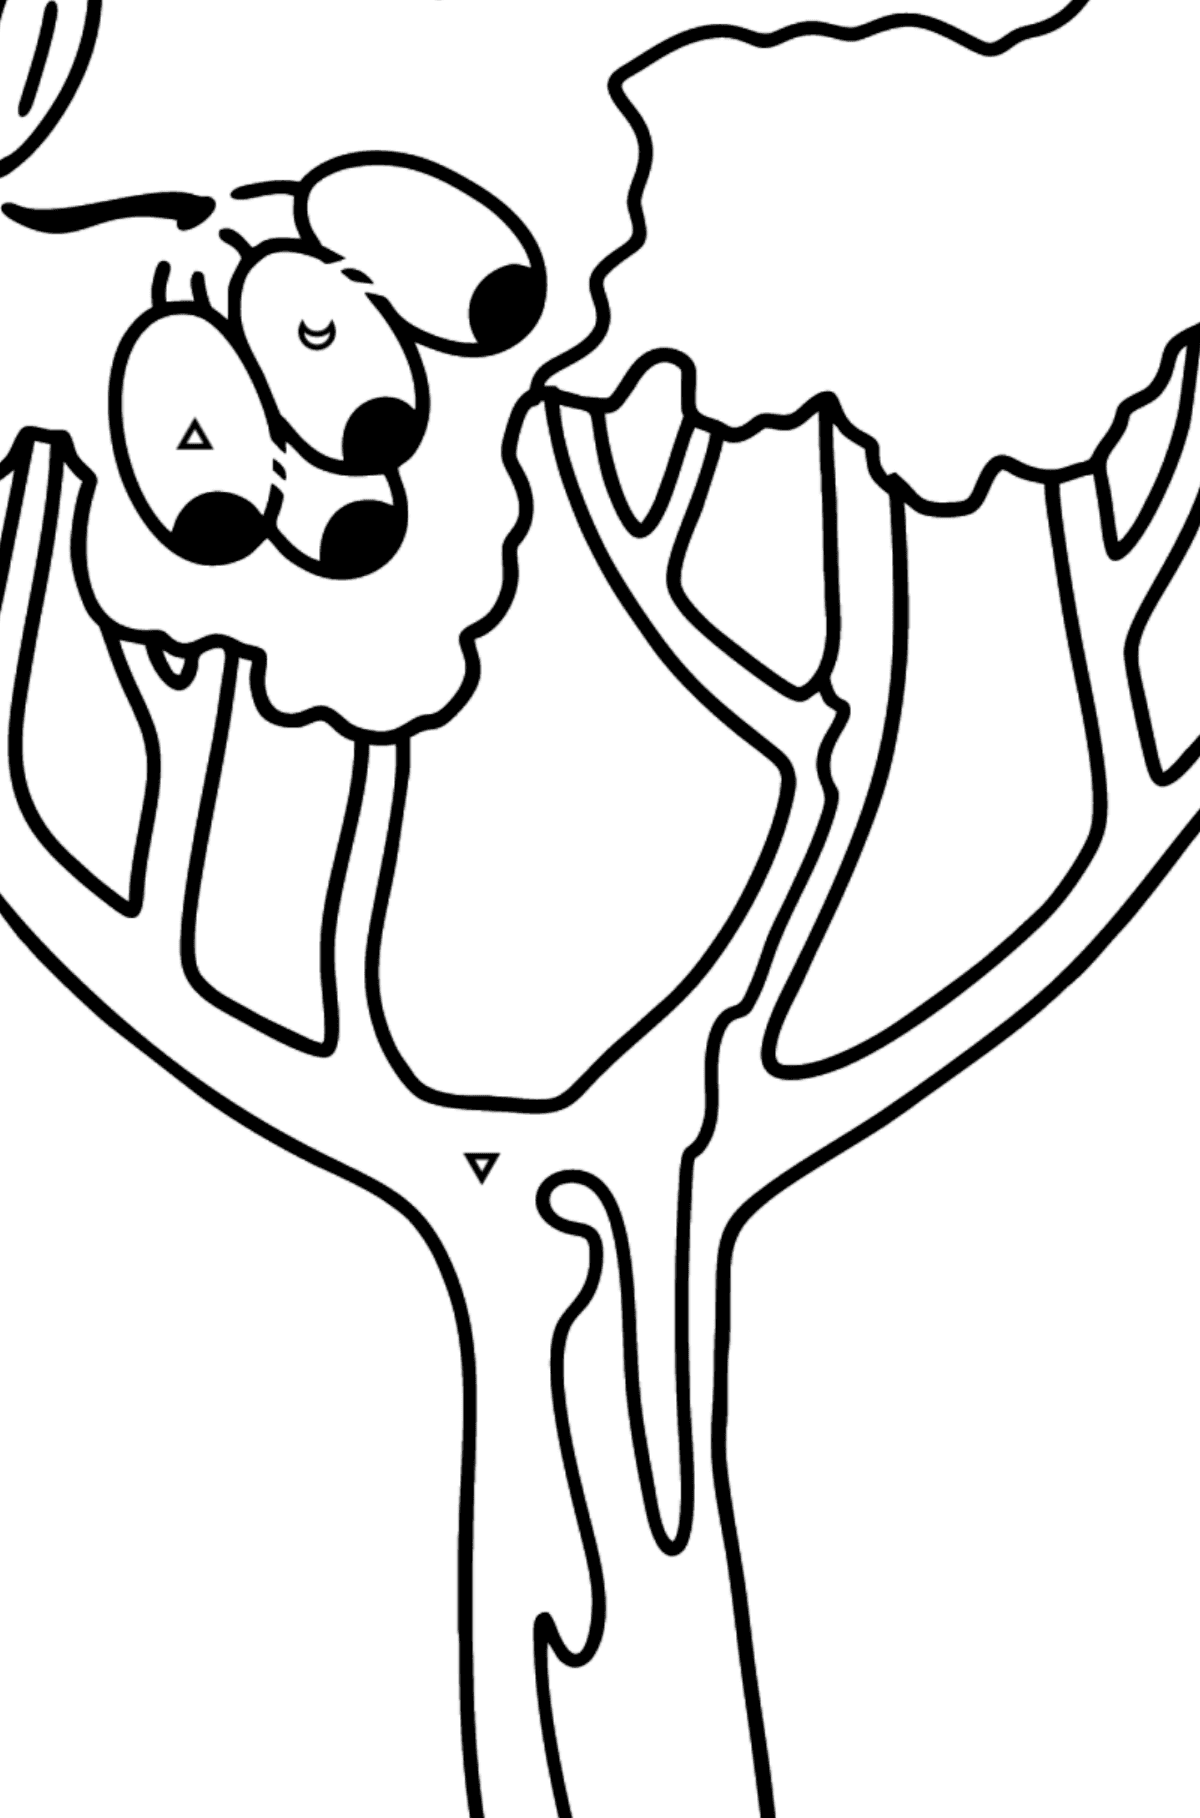 Mewarnai gambar pohon karet - Corimbia - Pewarnaan mengikuti Simbol untuk anak-anak